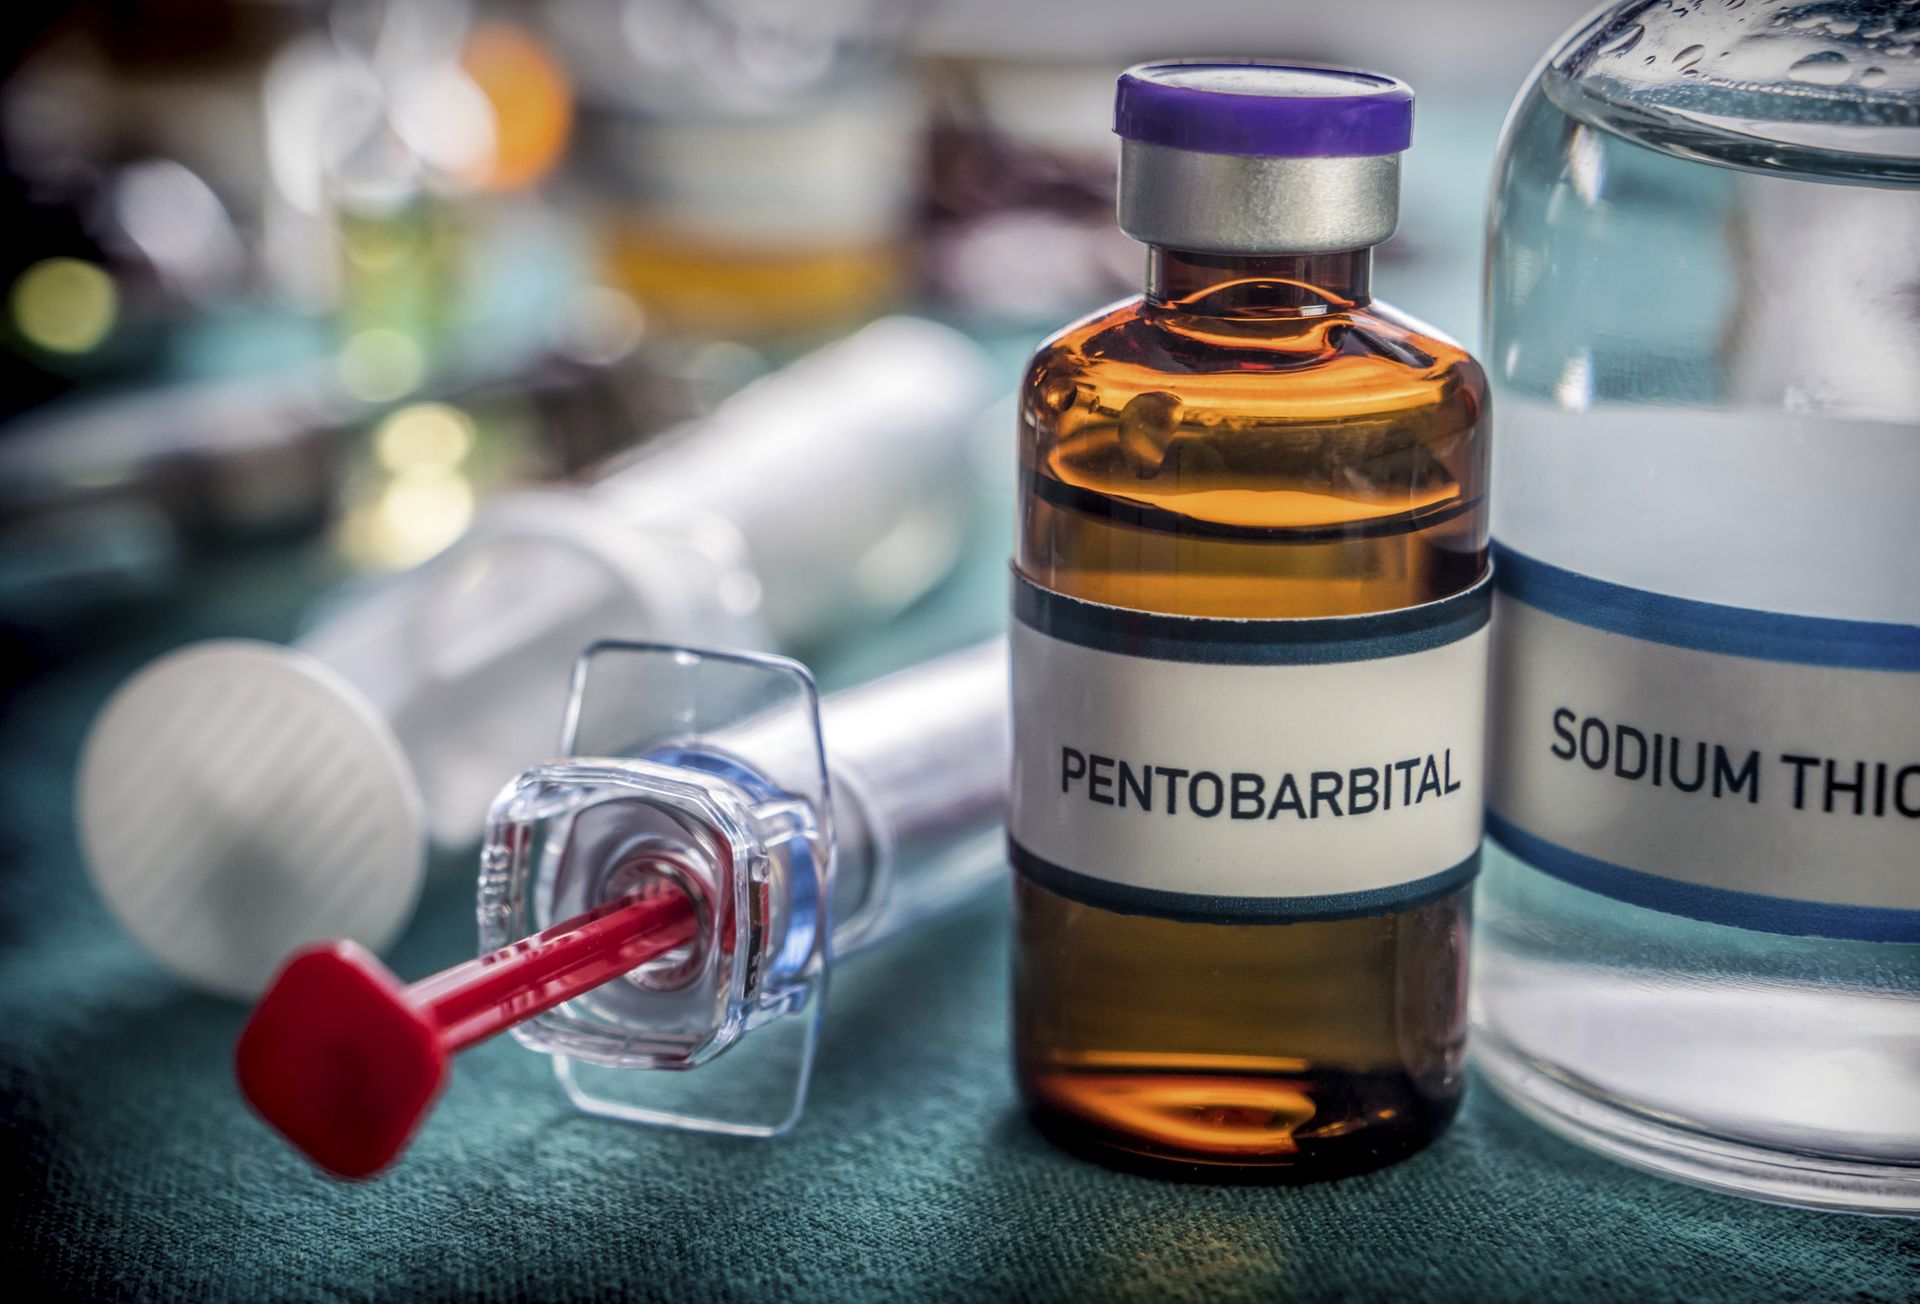 Buy Pentobarbital Sodium